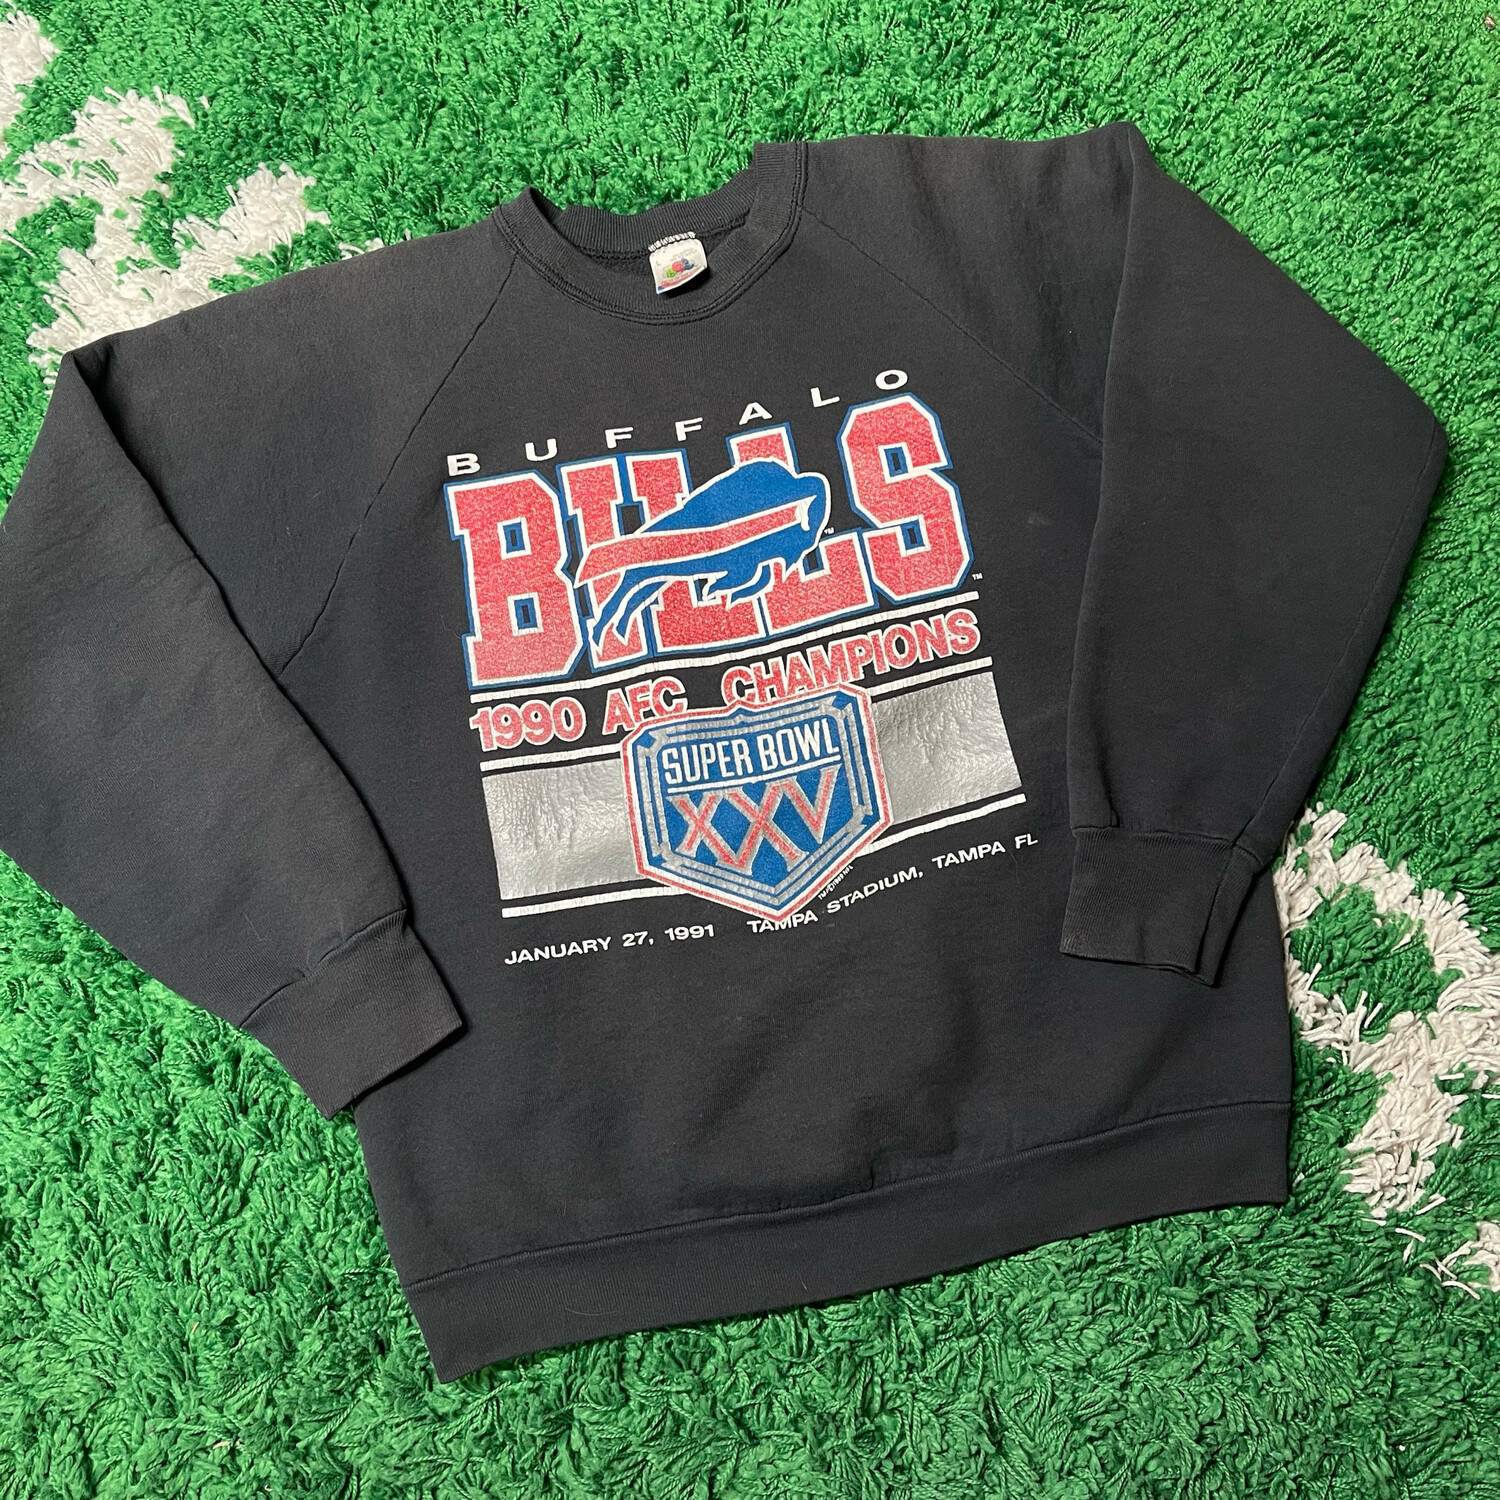 Buffalo Bills 1990 AFC Championship Crewneck Sweater Size Large